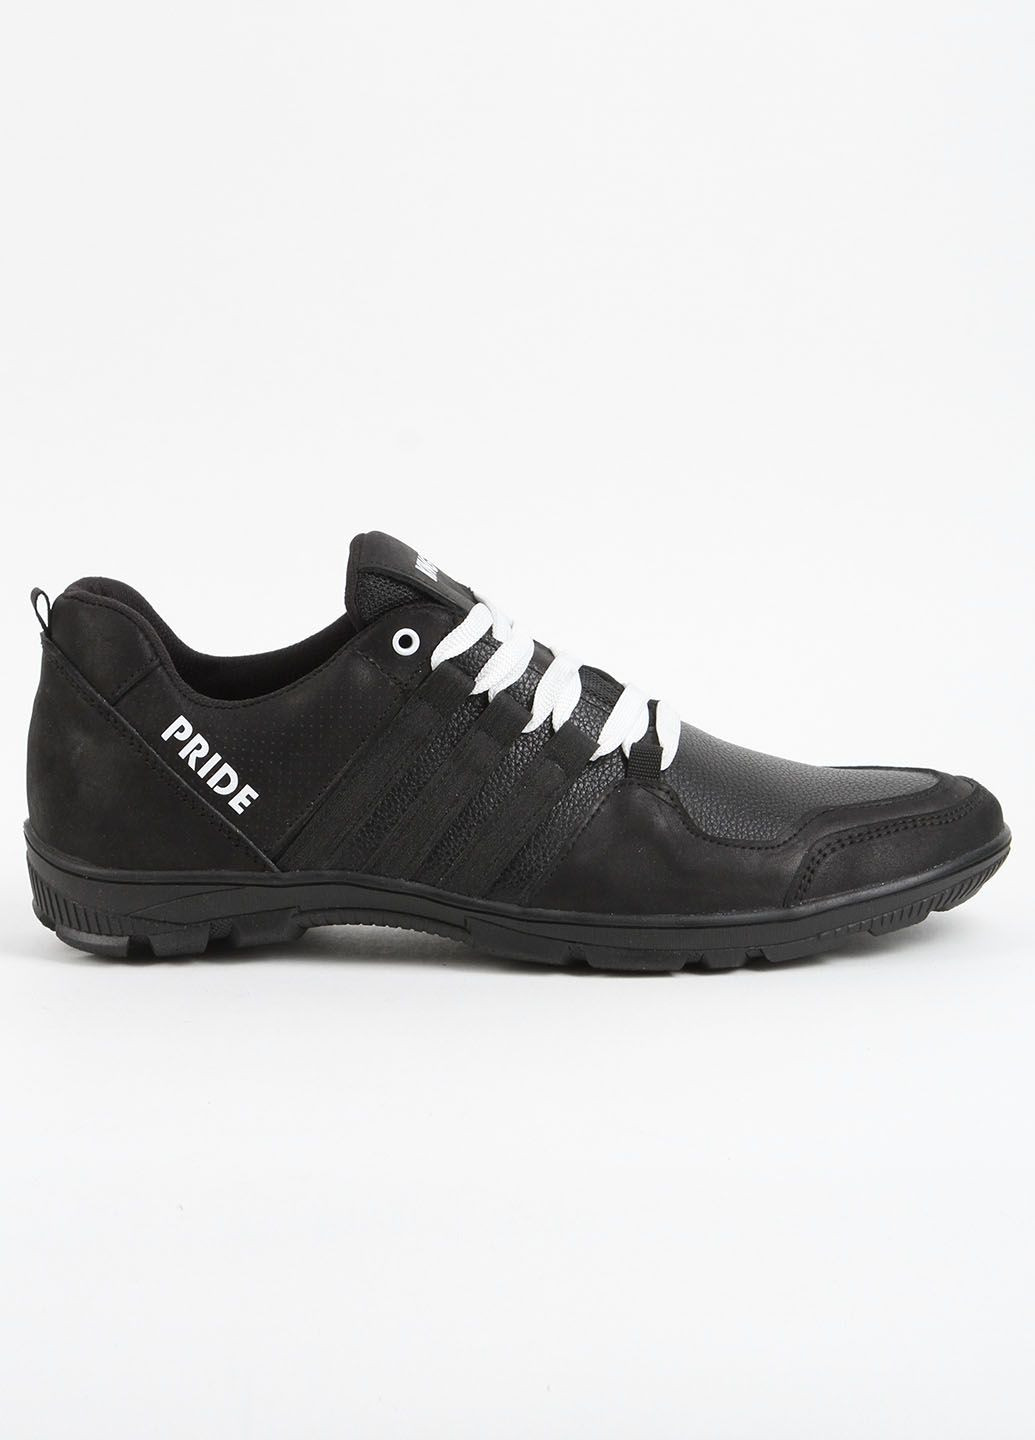 Черные кроссовки мужские кожаные 339616 Power